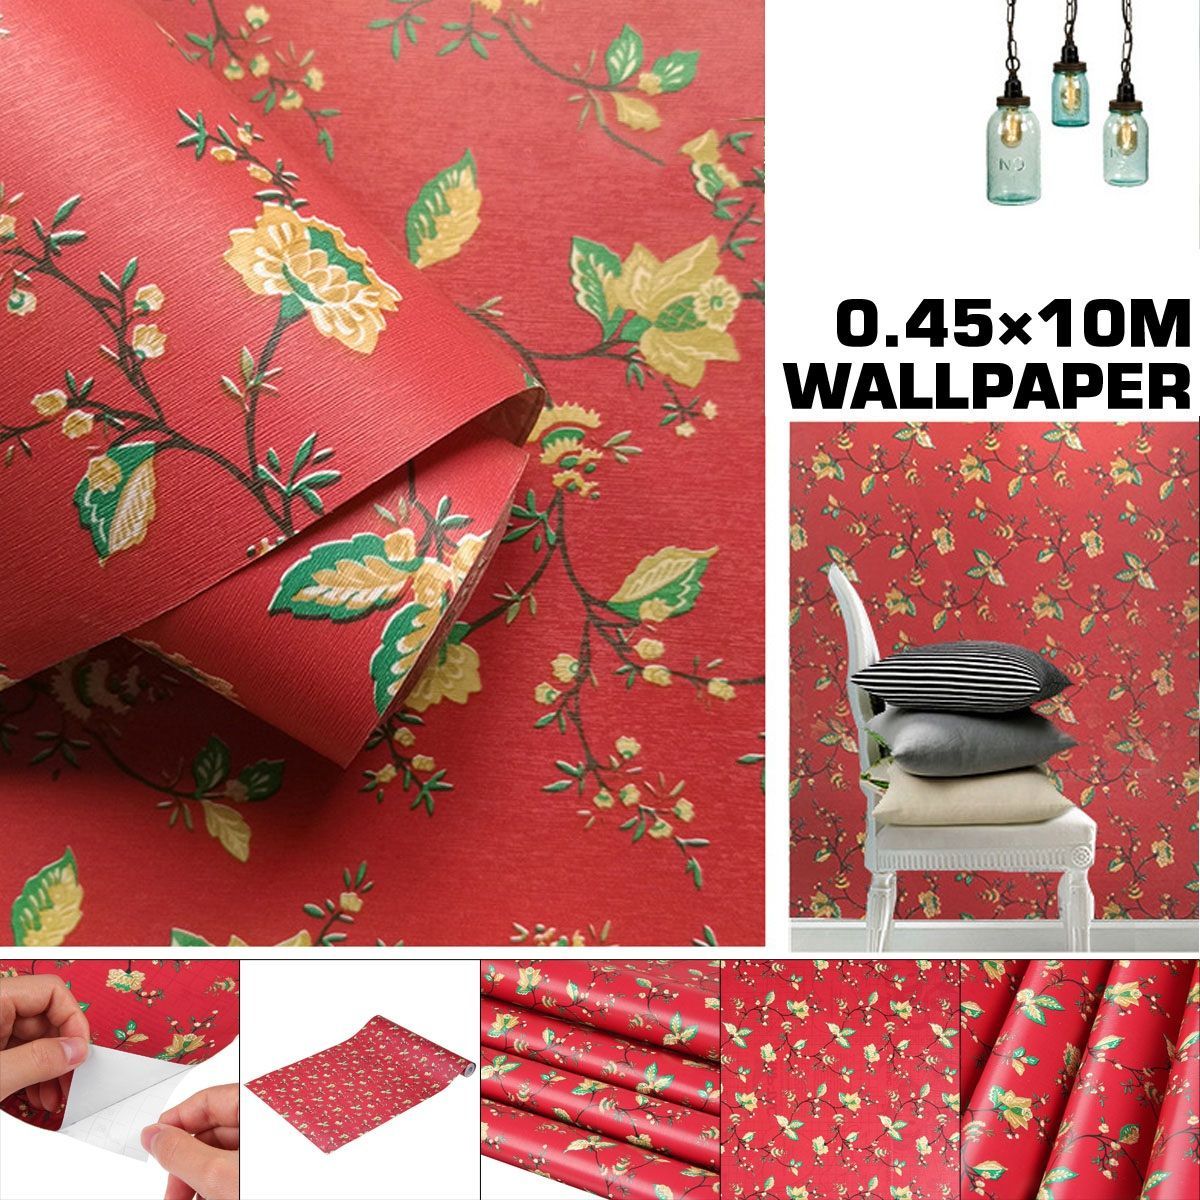 04510m-PVC-Wallpaper-Flower-Pattern-Dustproof-Moisture-Proof-Waterproof-Wallpaper-1738342